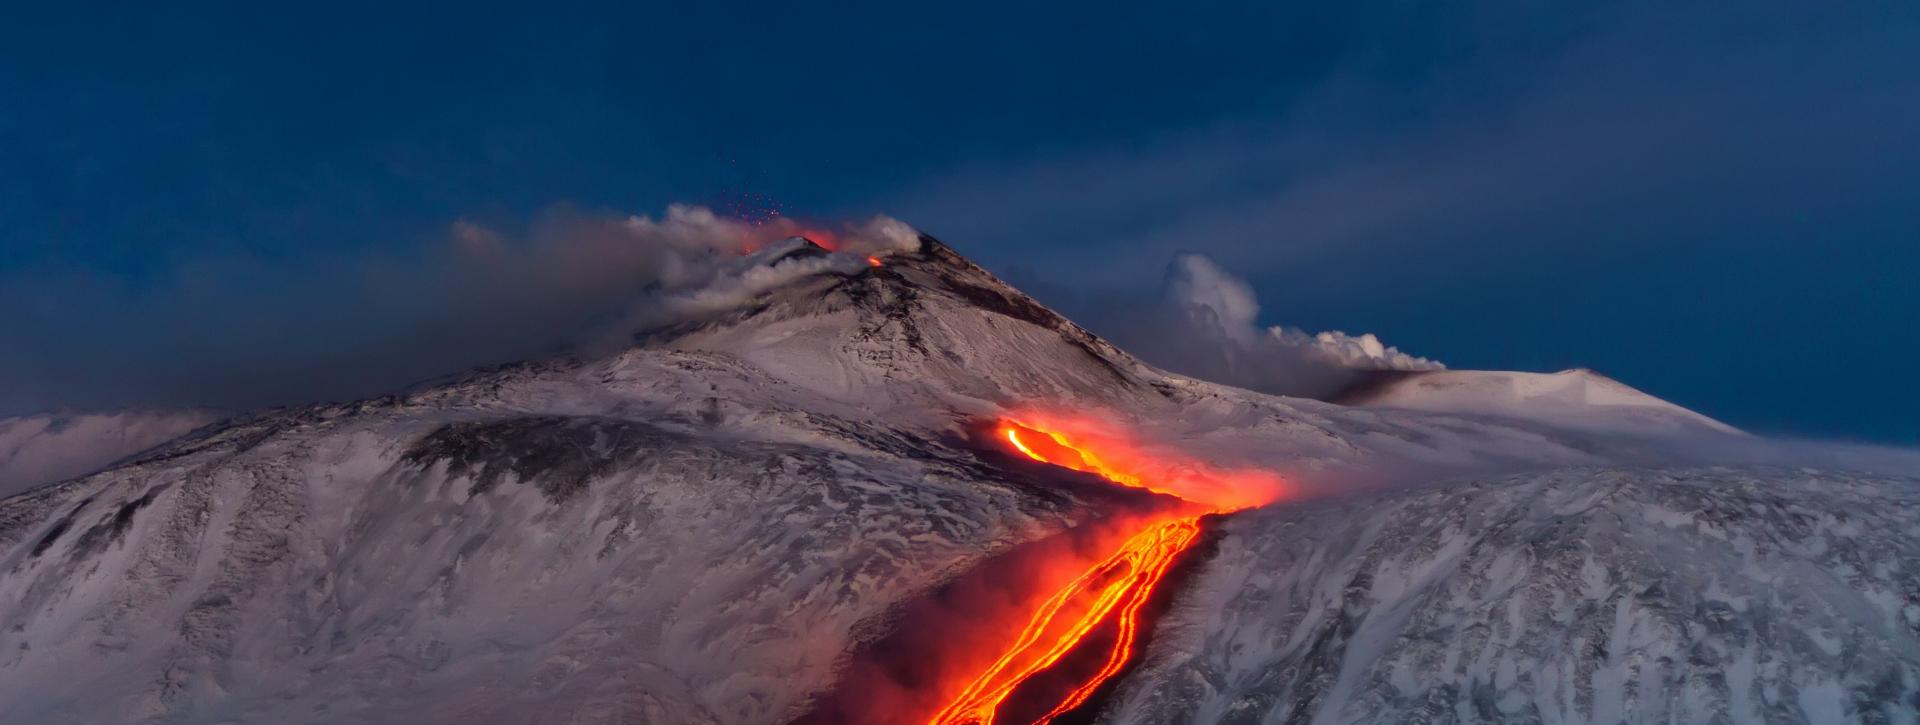 volcan etna eruption sicile etna3340